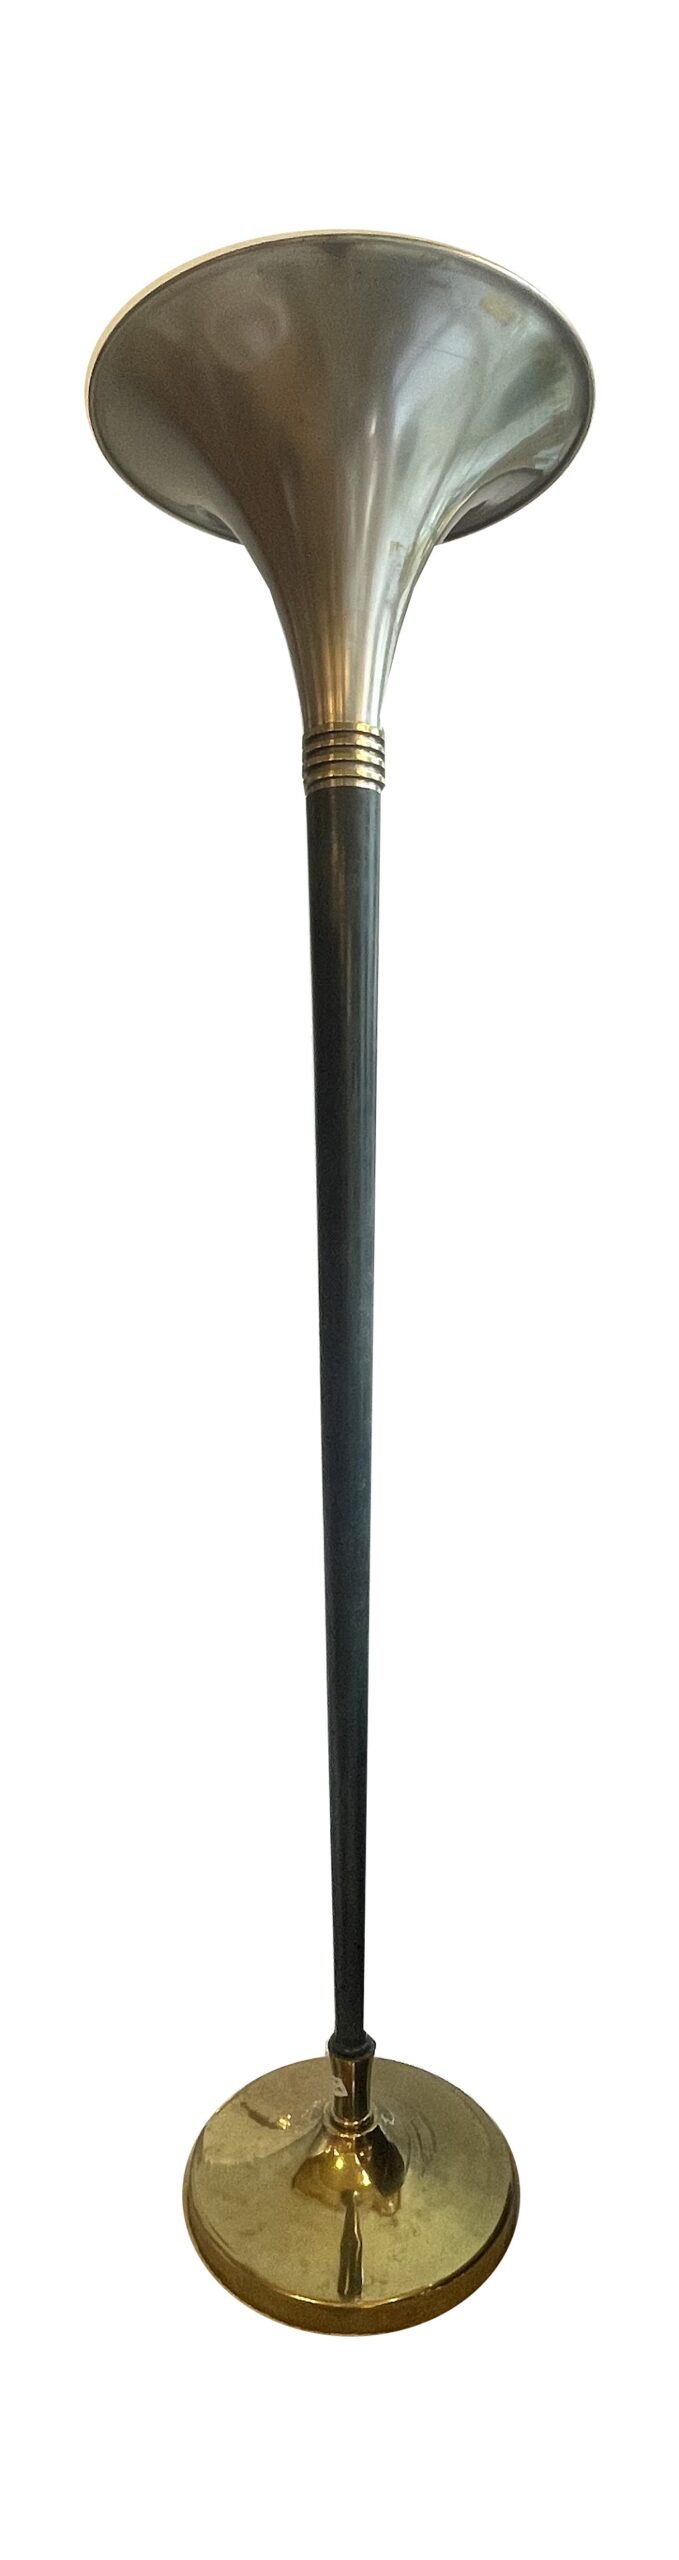 Stehlampe in Bronze mit grünmarmoriertem Schaft